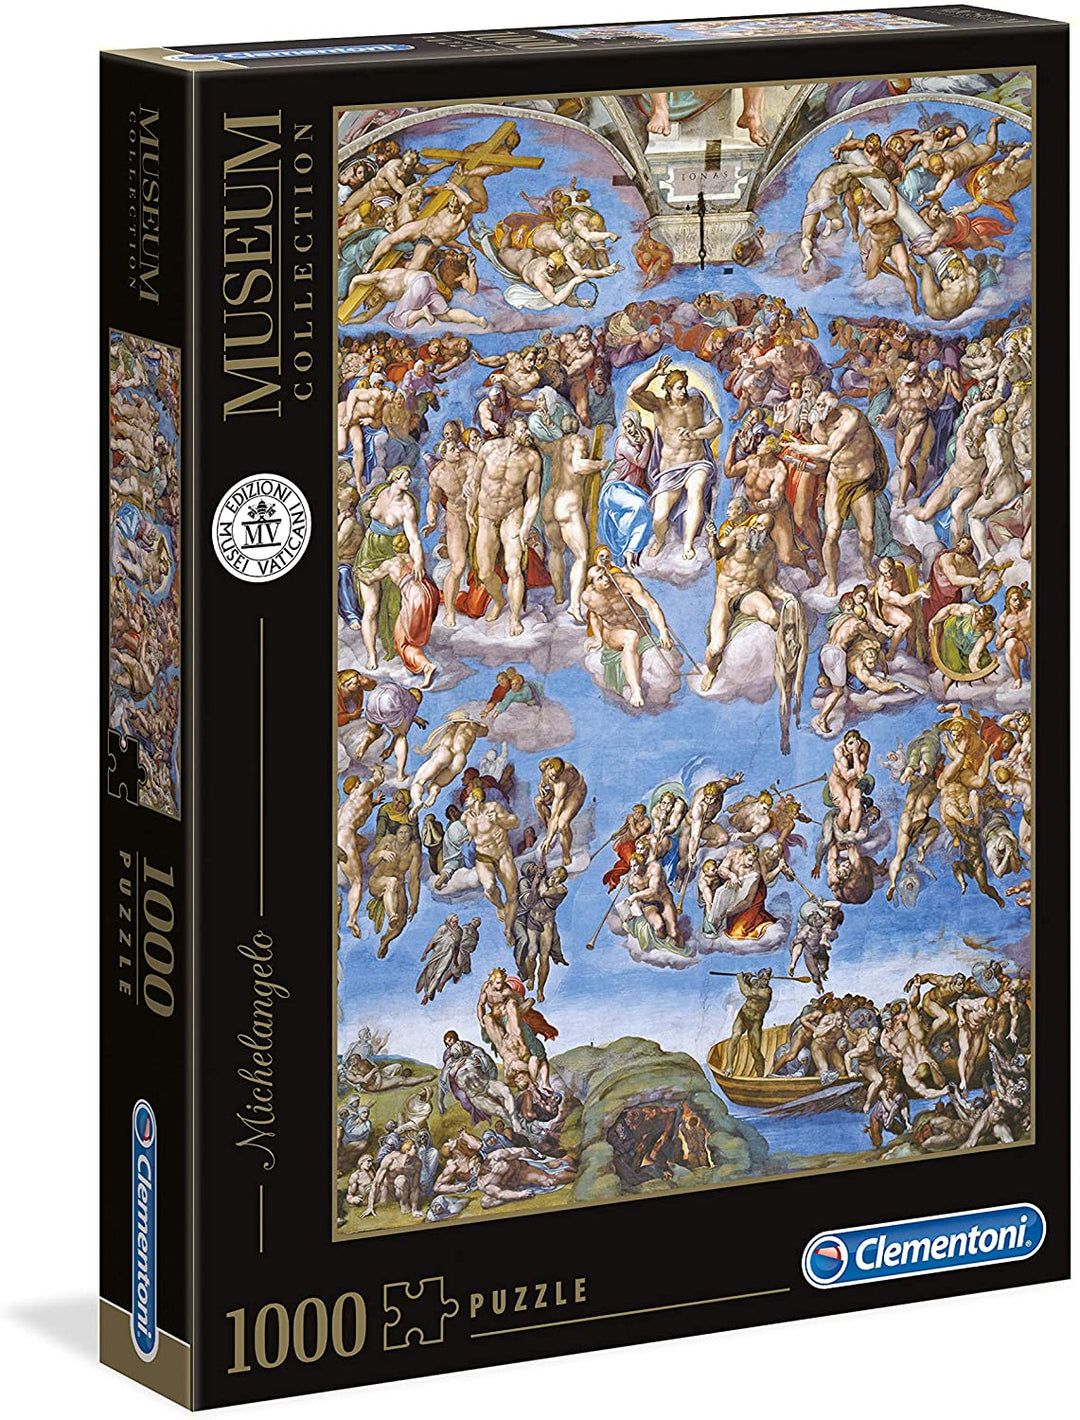 Clementoni - 39497 - Vaticaanse puzzel Michelangelo Universal Justice-1000 stukjes